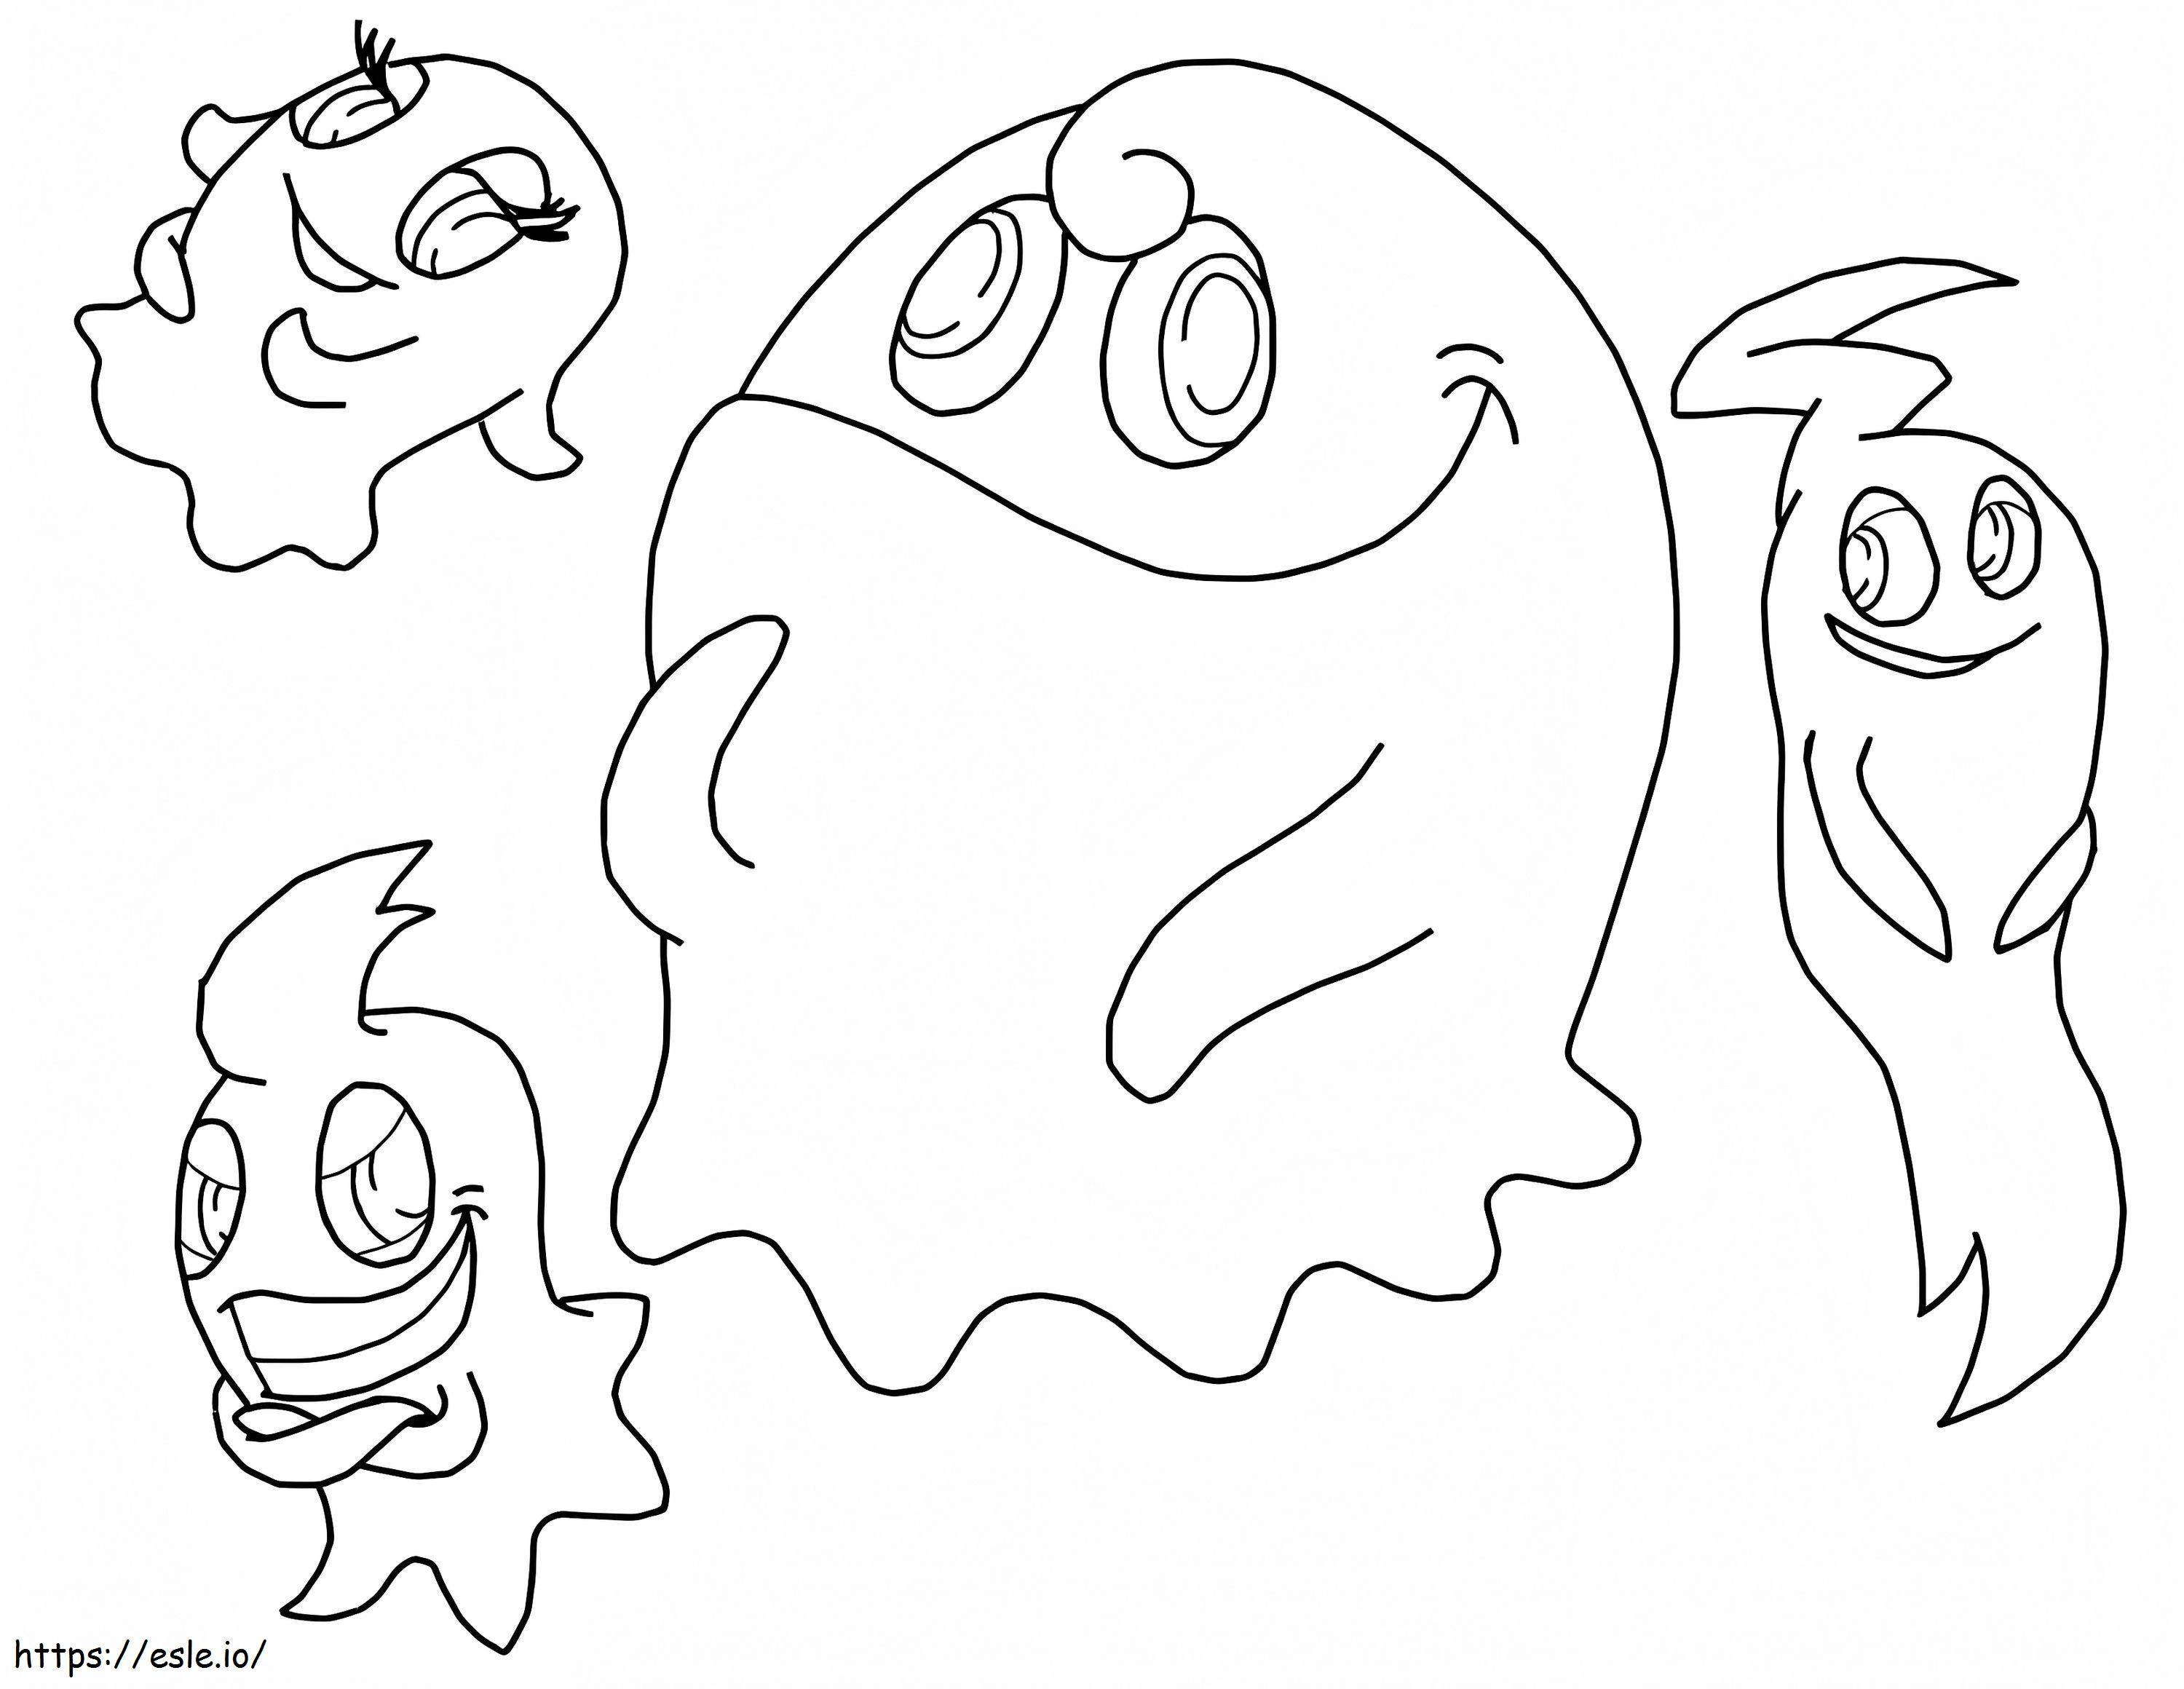 Quatro fantasmas em Pacman para colorir